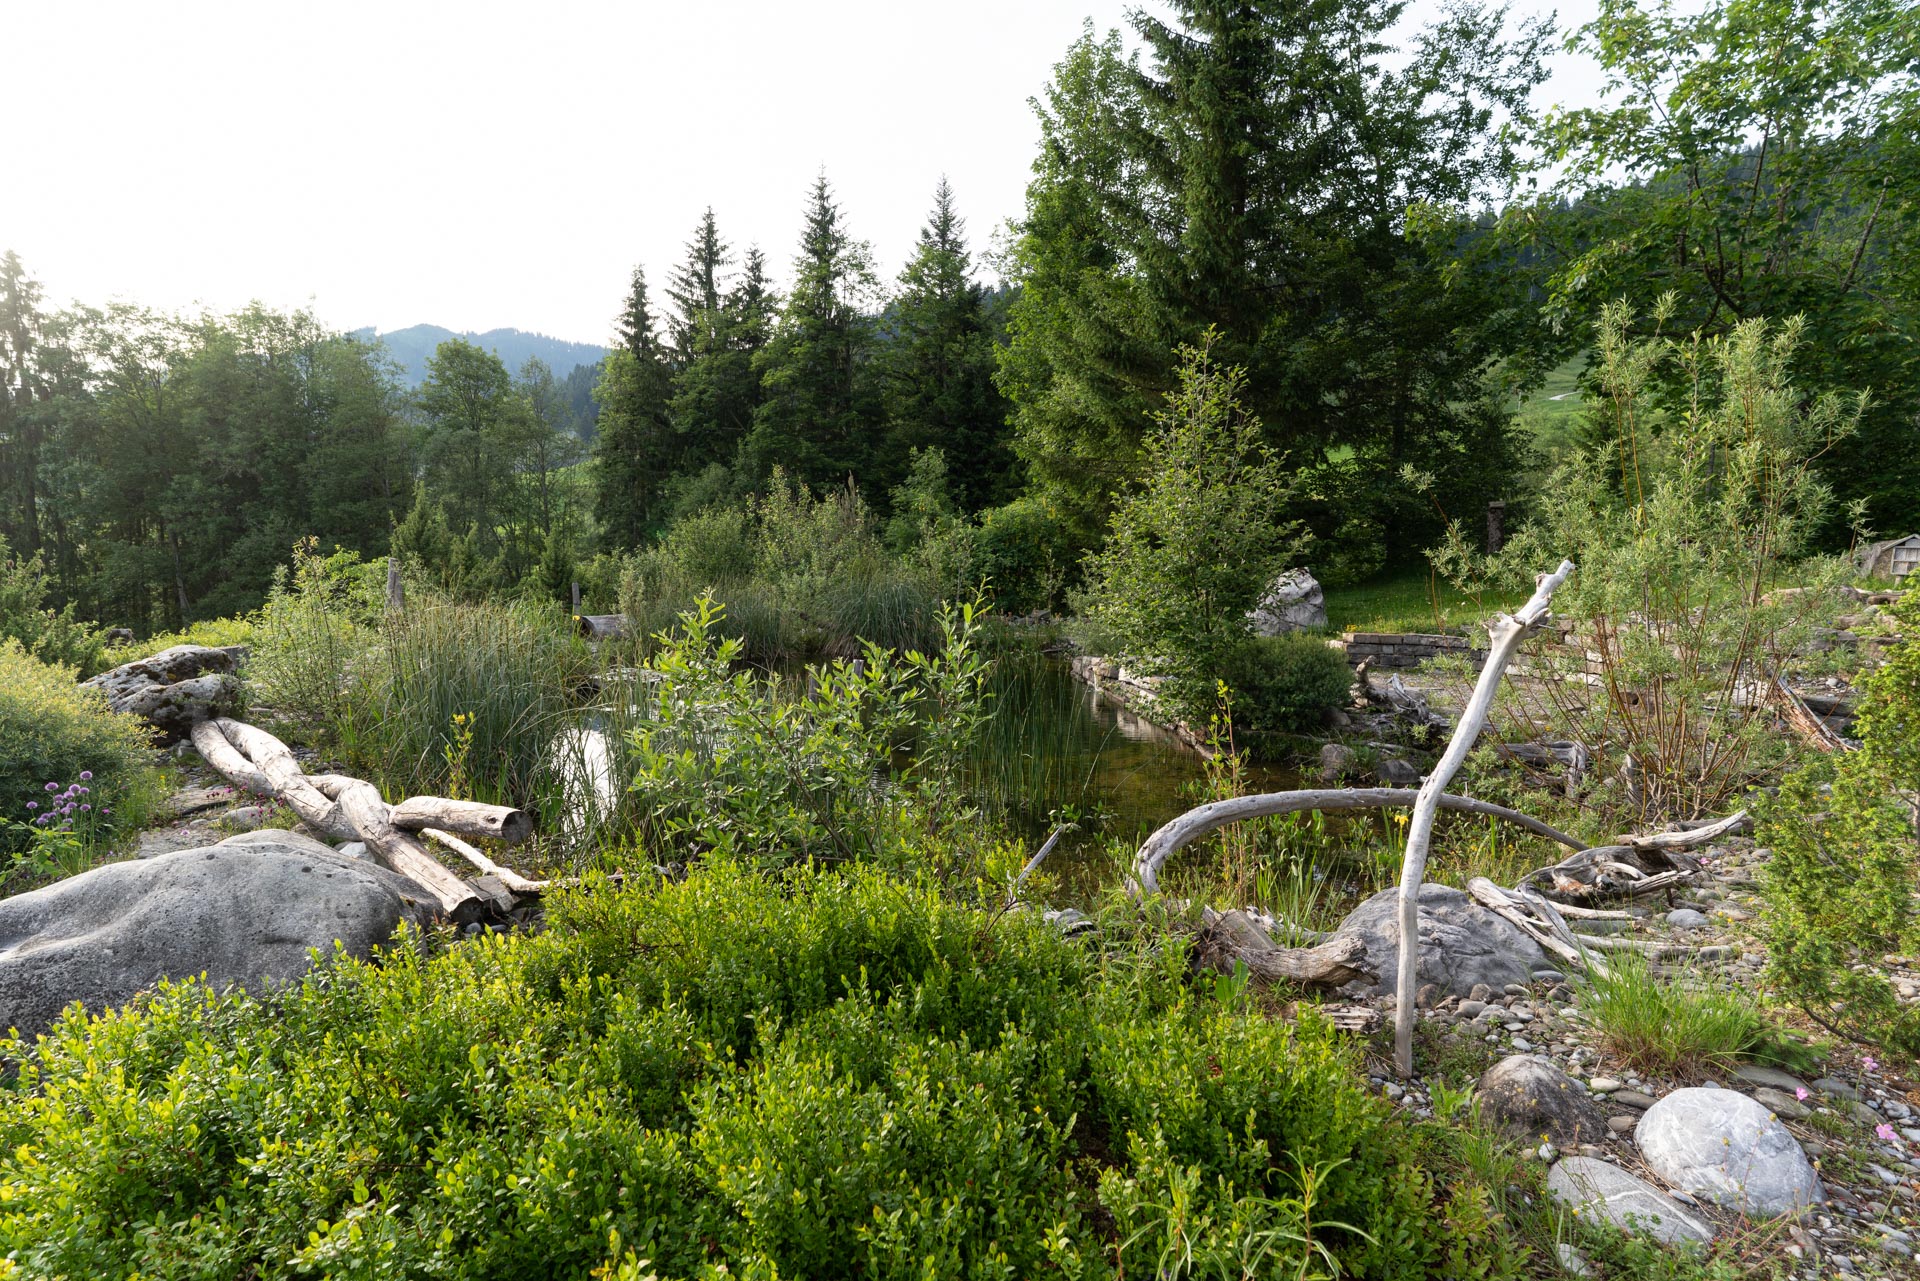 Naturgarten: Ein wilder, naturnaher Garten mit einheimischen Pflanzen und natürlichen Elementen in ländlicher Umgebung